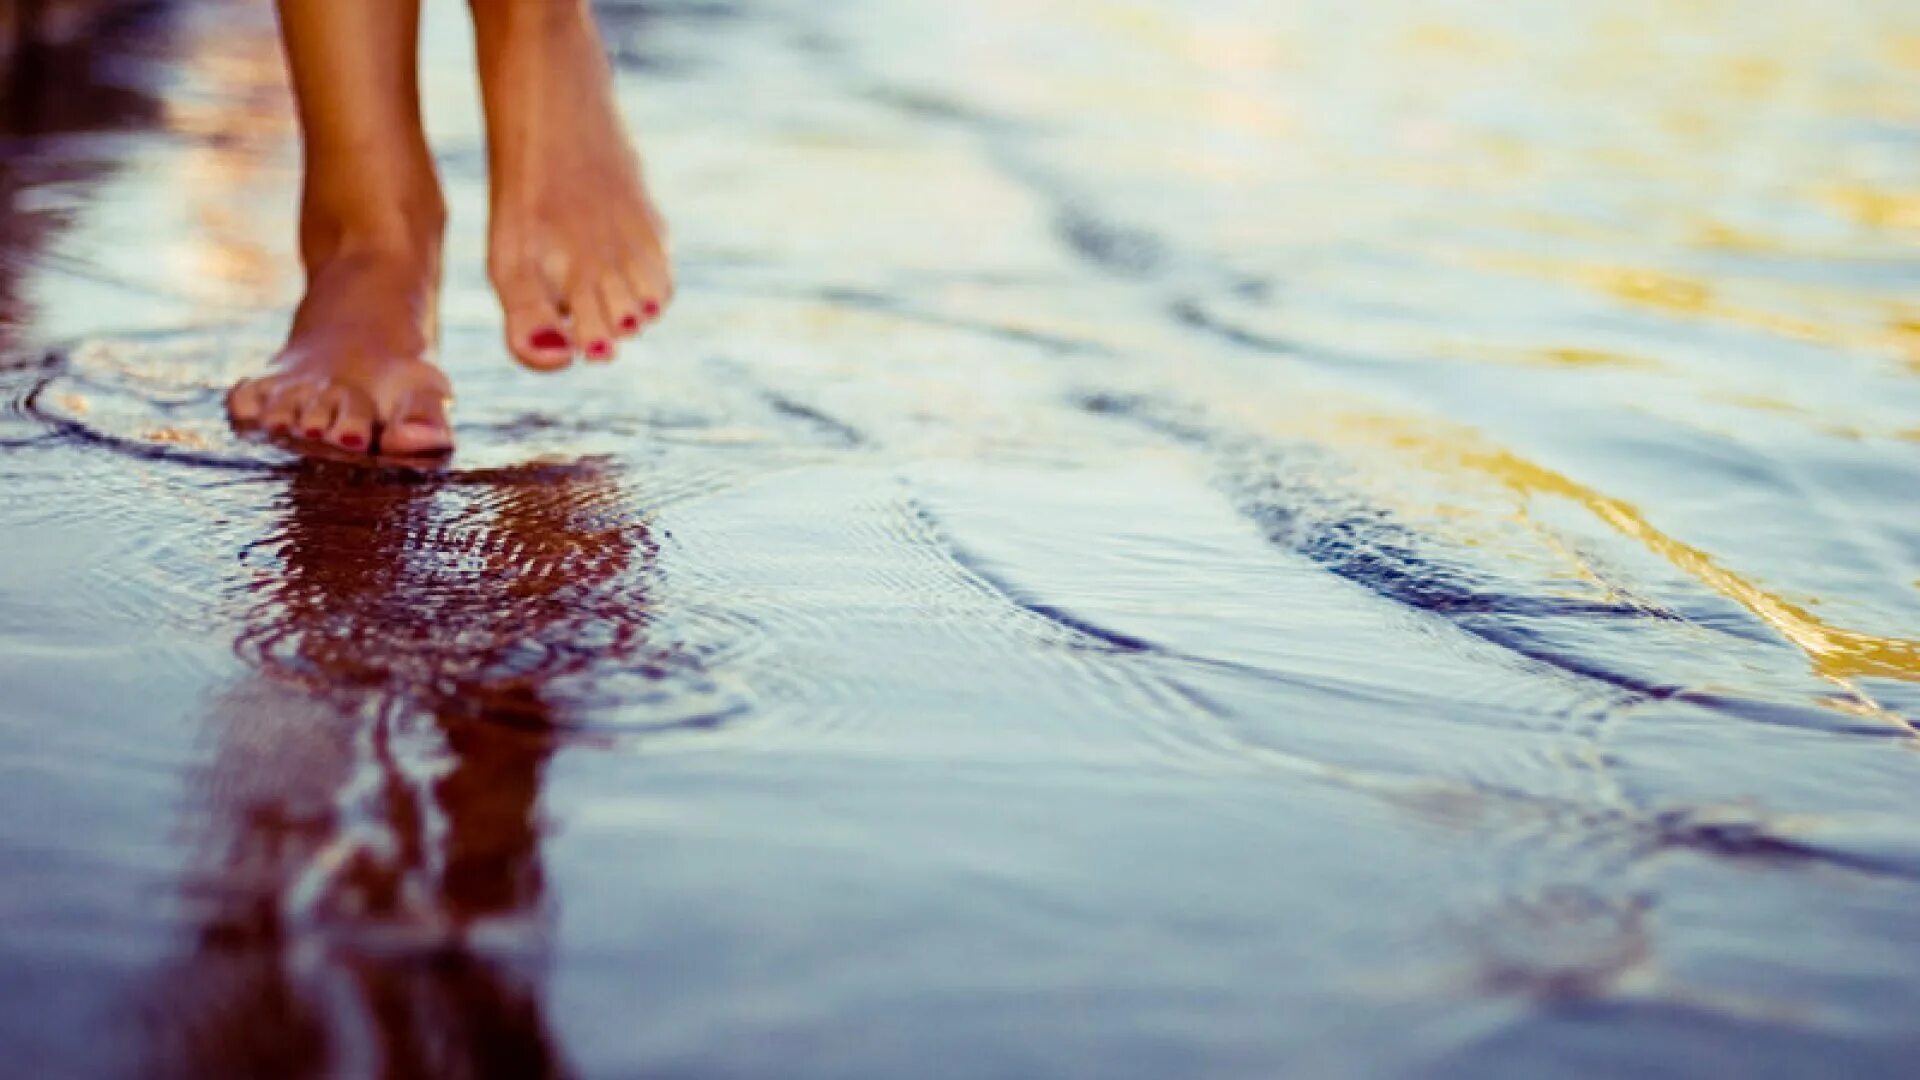 Помогаем друг другу сделать шаг. Ноги по воде. Босые ноги в воде. Ноги в луже. Маленькими шагами к счастью.